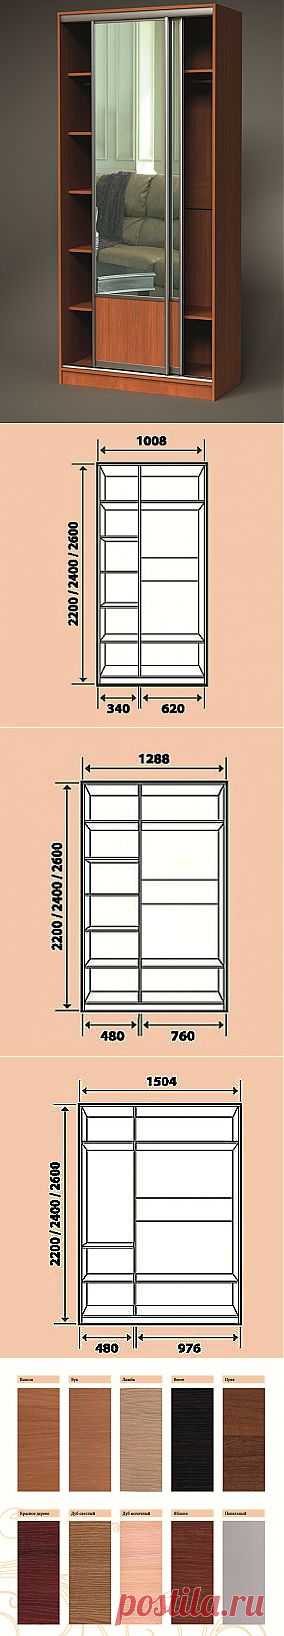 Шкафы купе двухстворчатые
Шкафы изготавливаются только стандартных размеров.

В базовую стоимость шкафов включены стандартные (глухие) двери в однотонном профиле.